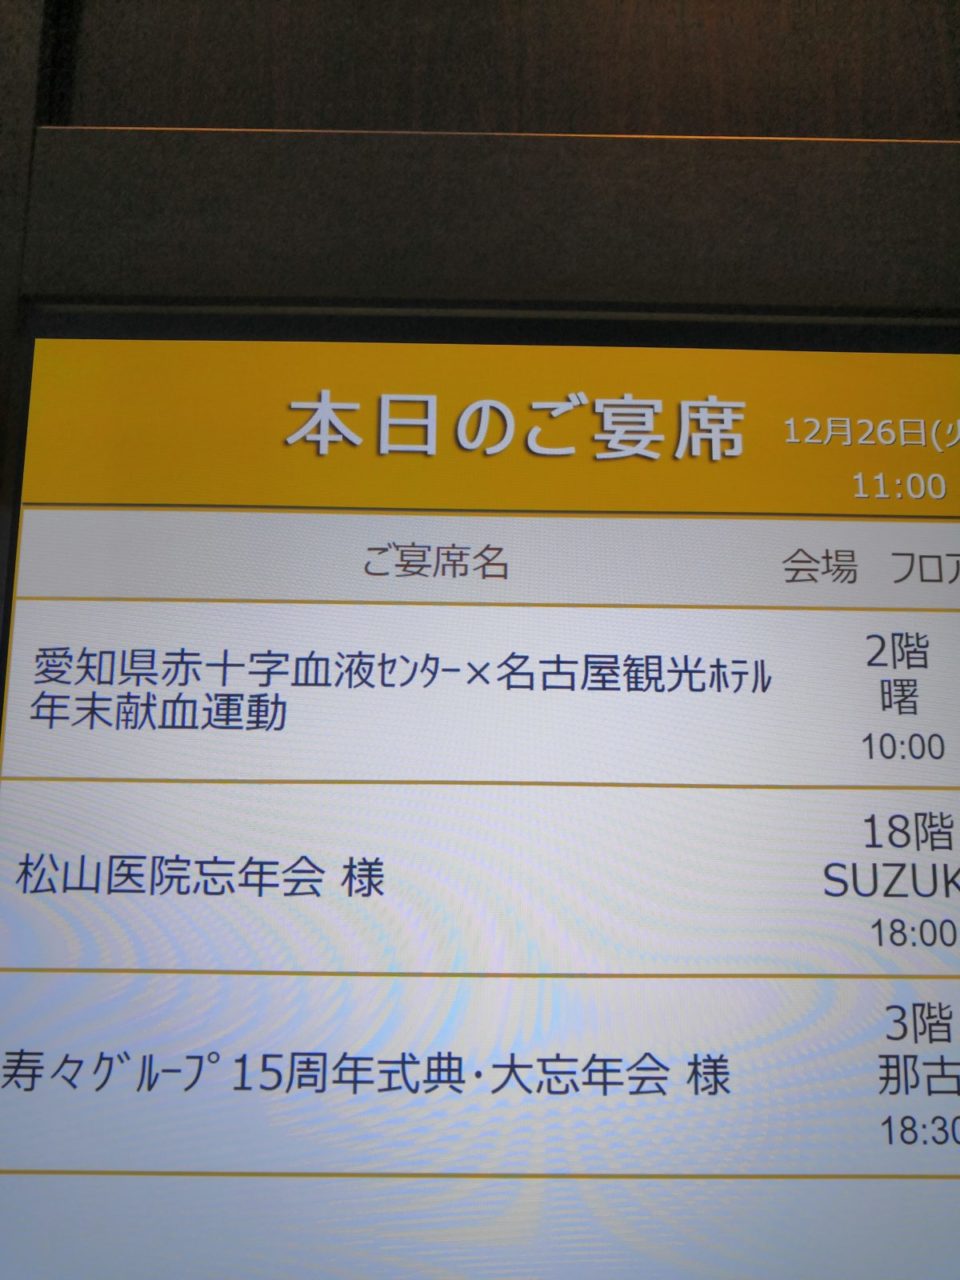 《命の贈り物》名古屋観光ホテルがSDGsに取り組む特別なイベント:3種類の地元食材のデザートプレートを楽しむ 2023年12月26日